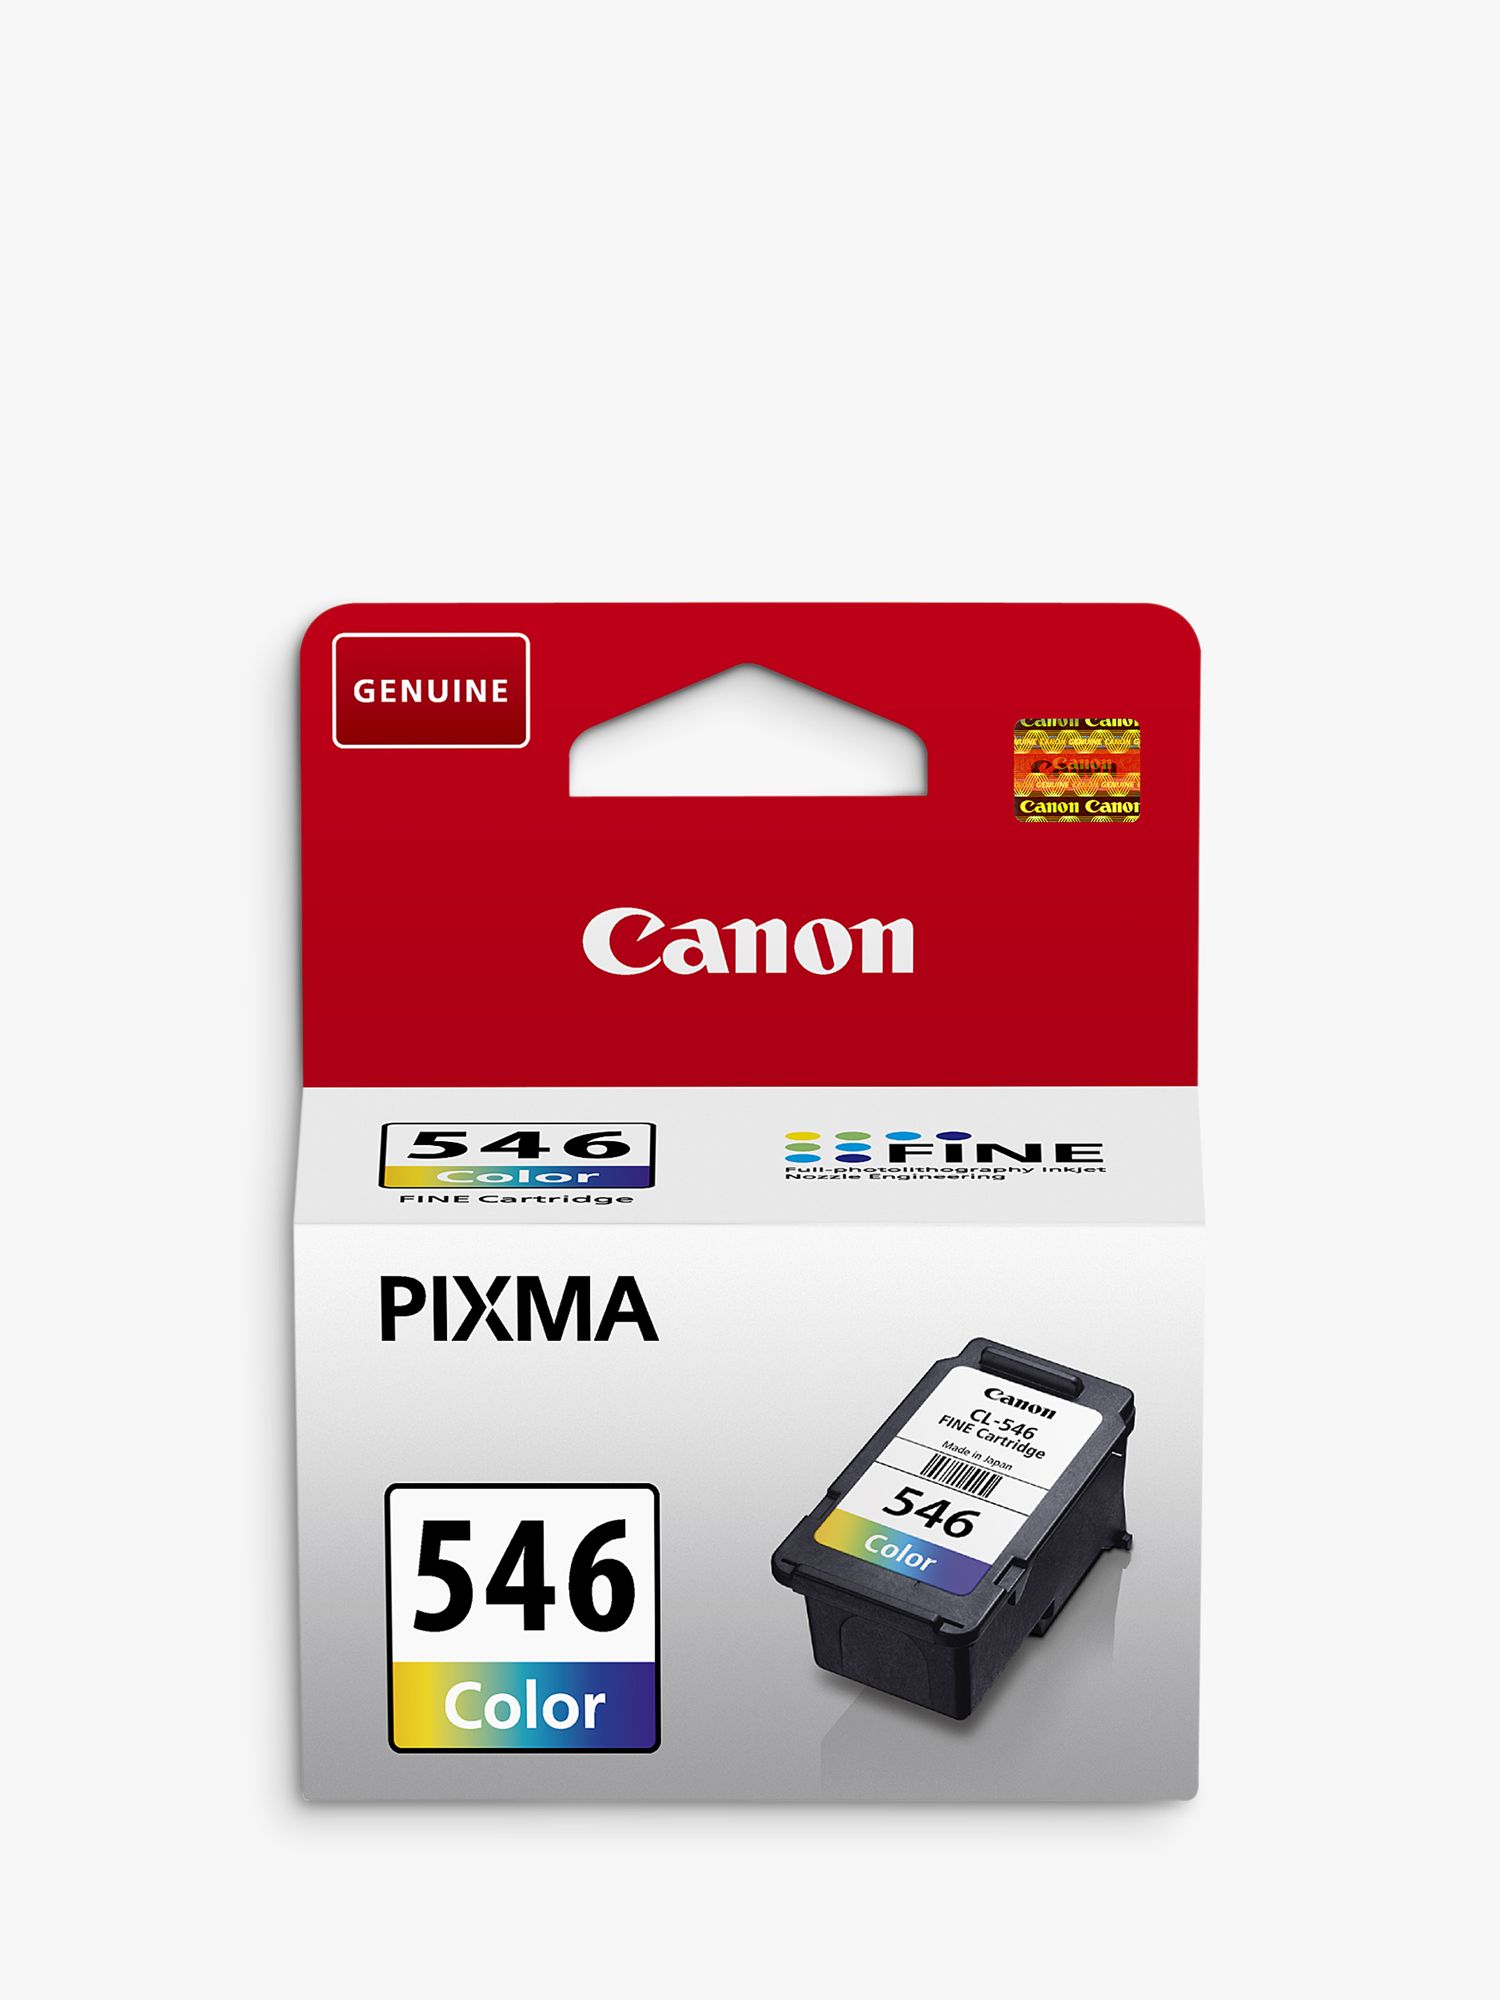 Картридж PIXMA 445 Black. Canon pixma 445